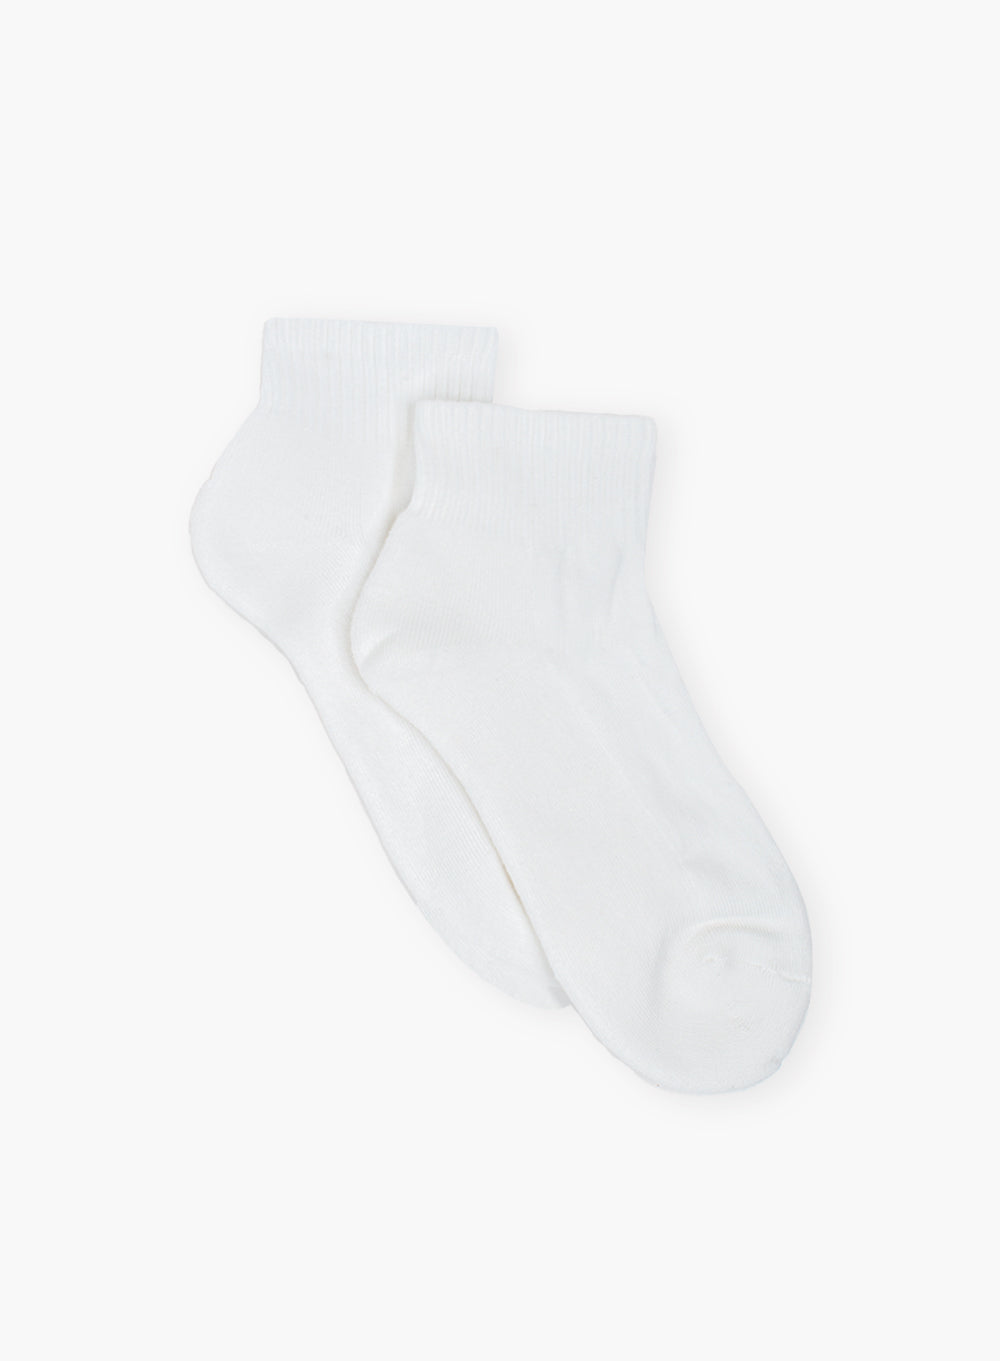 Chelsea Clothing Company Socks Sport Socks Pack